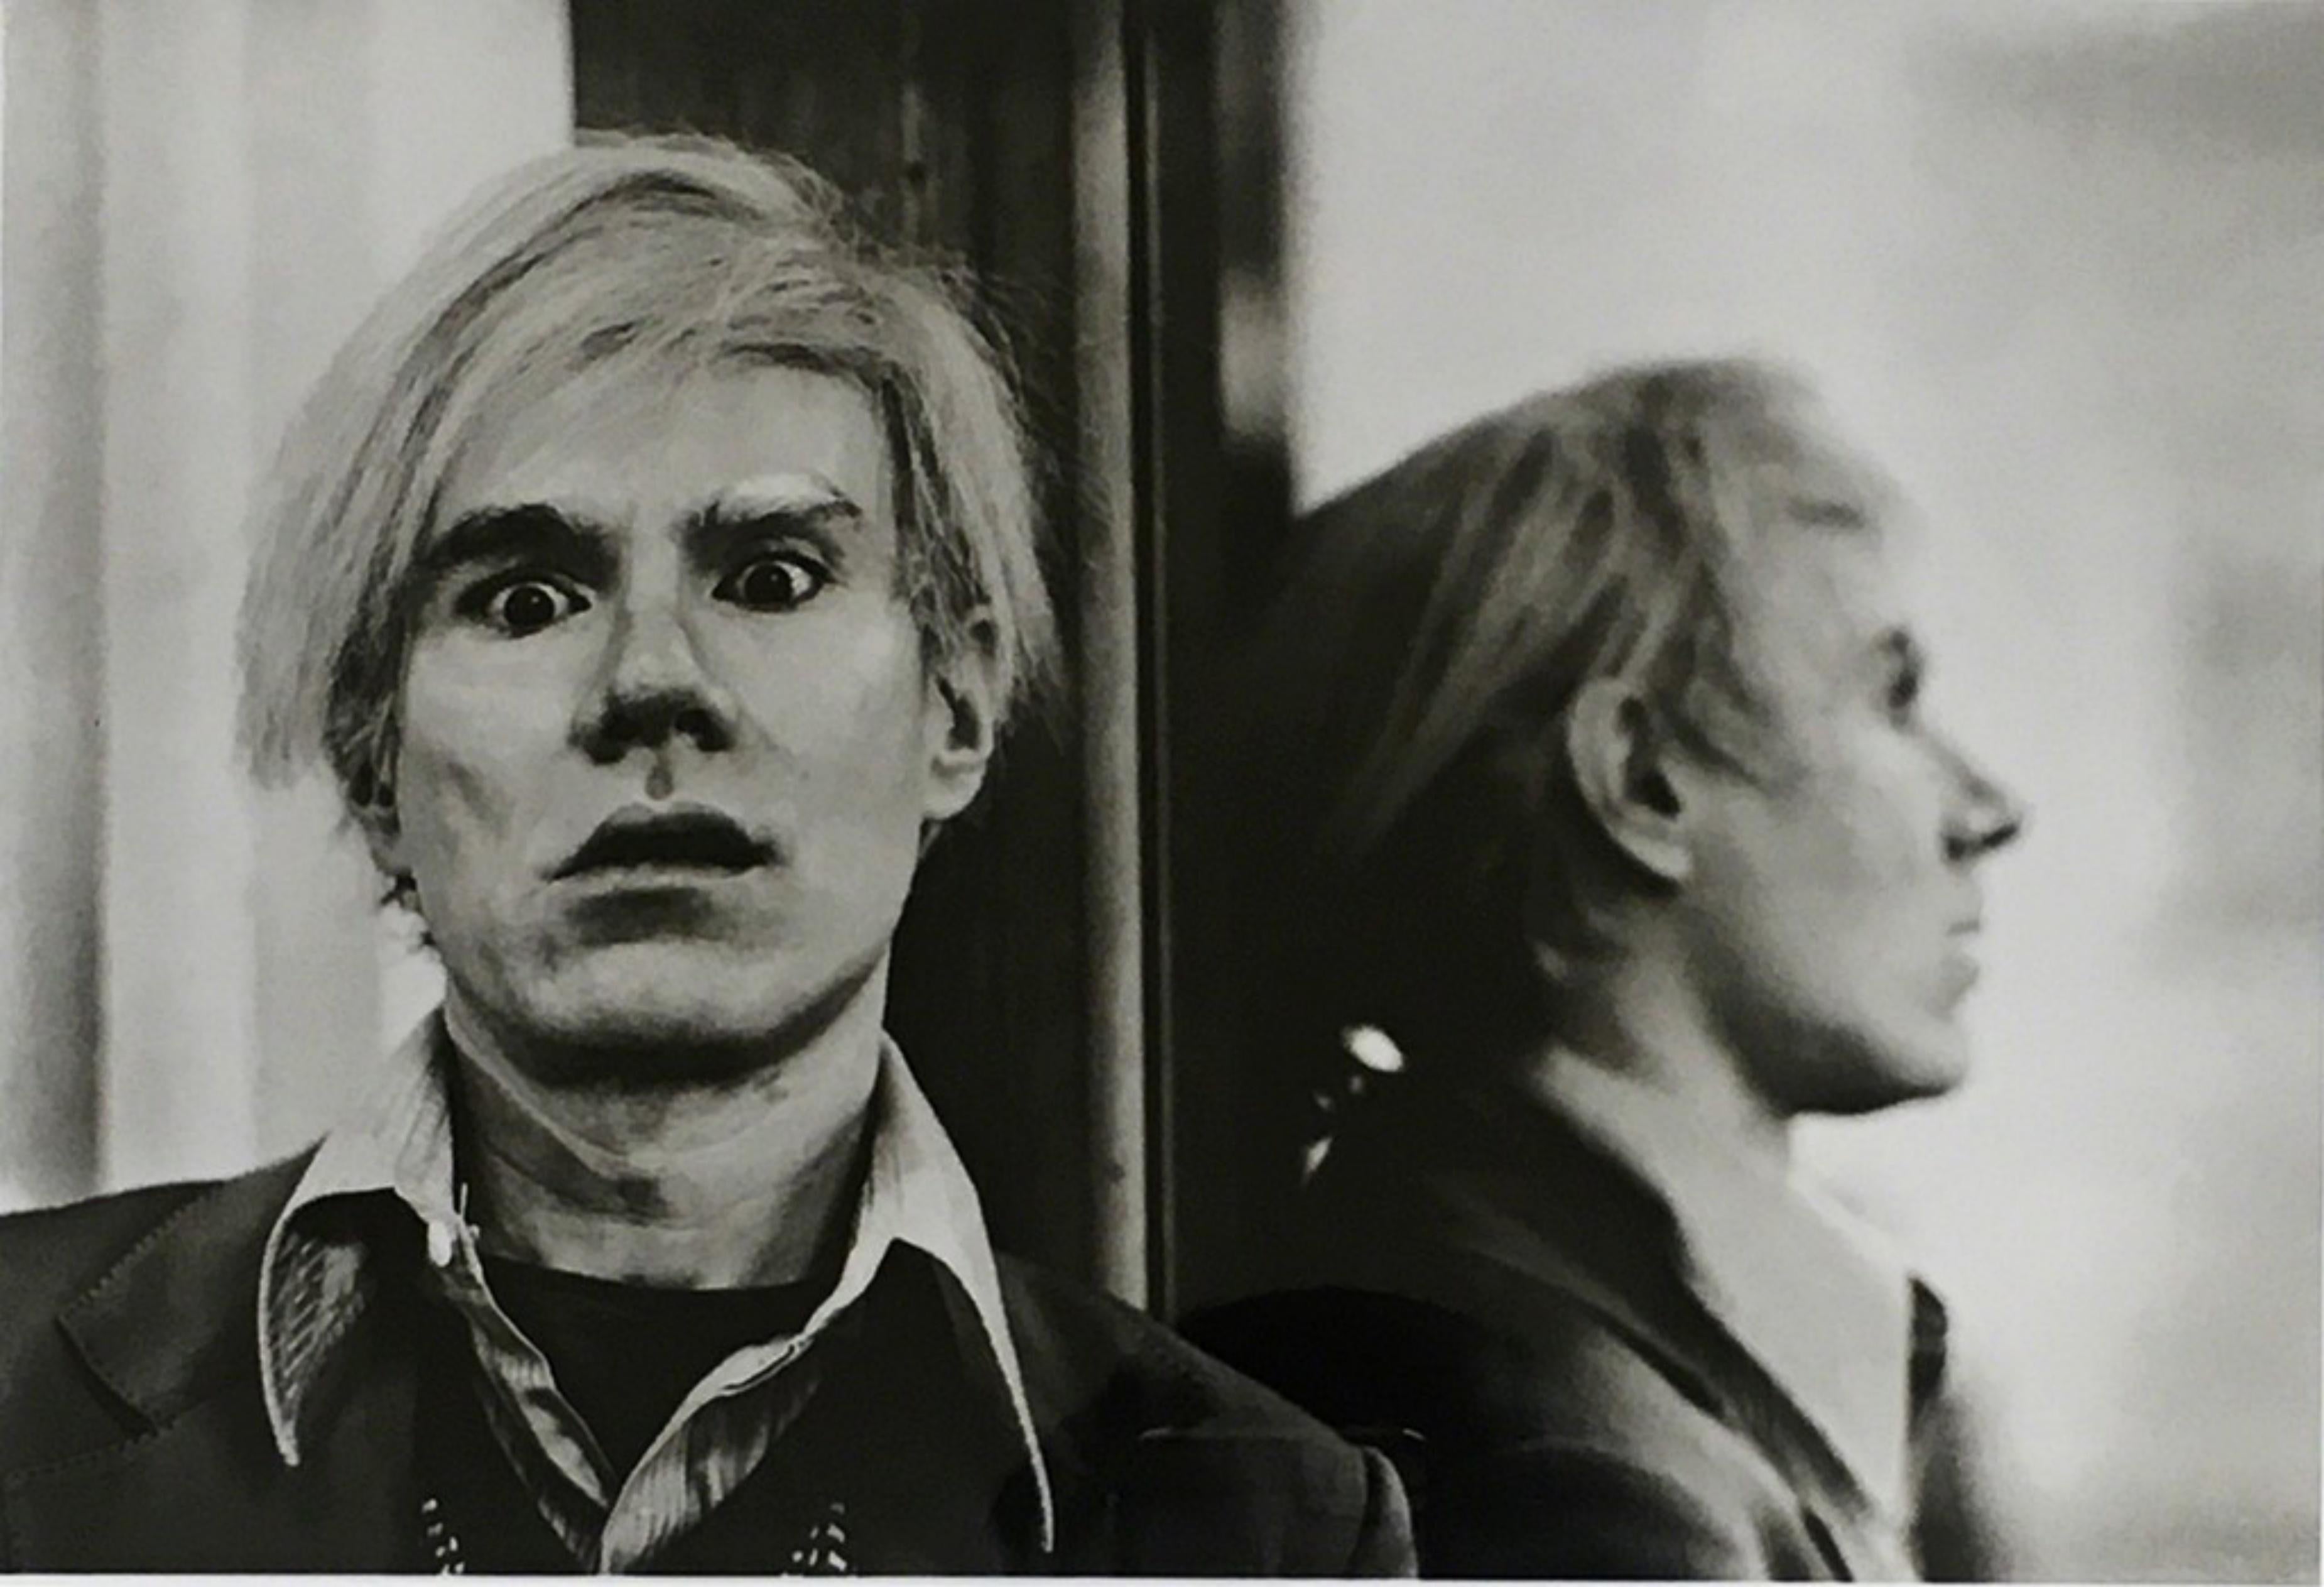 Andy Warhol dans son studio de New York, 1976 (Palm Springs Art Museum), signé  - Print de Michael Childers